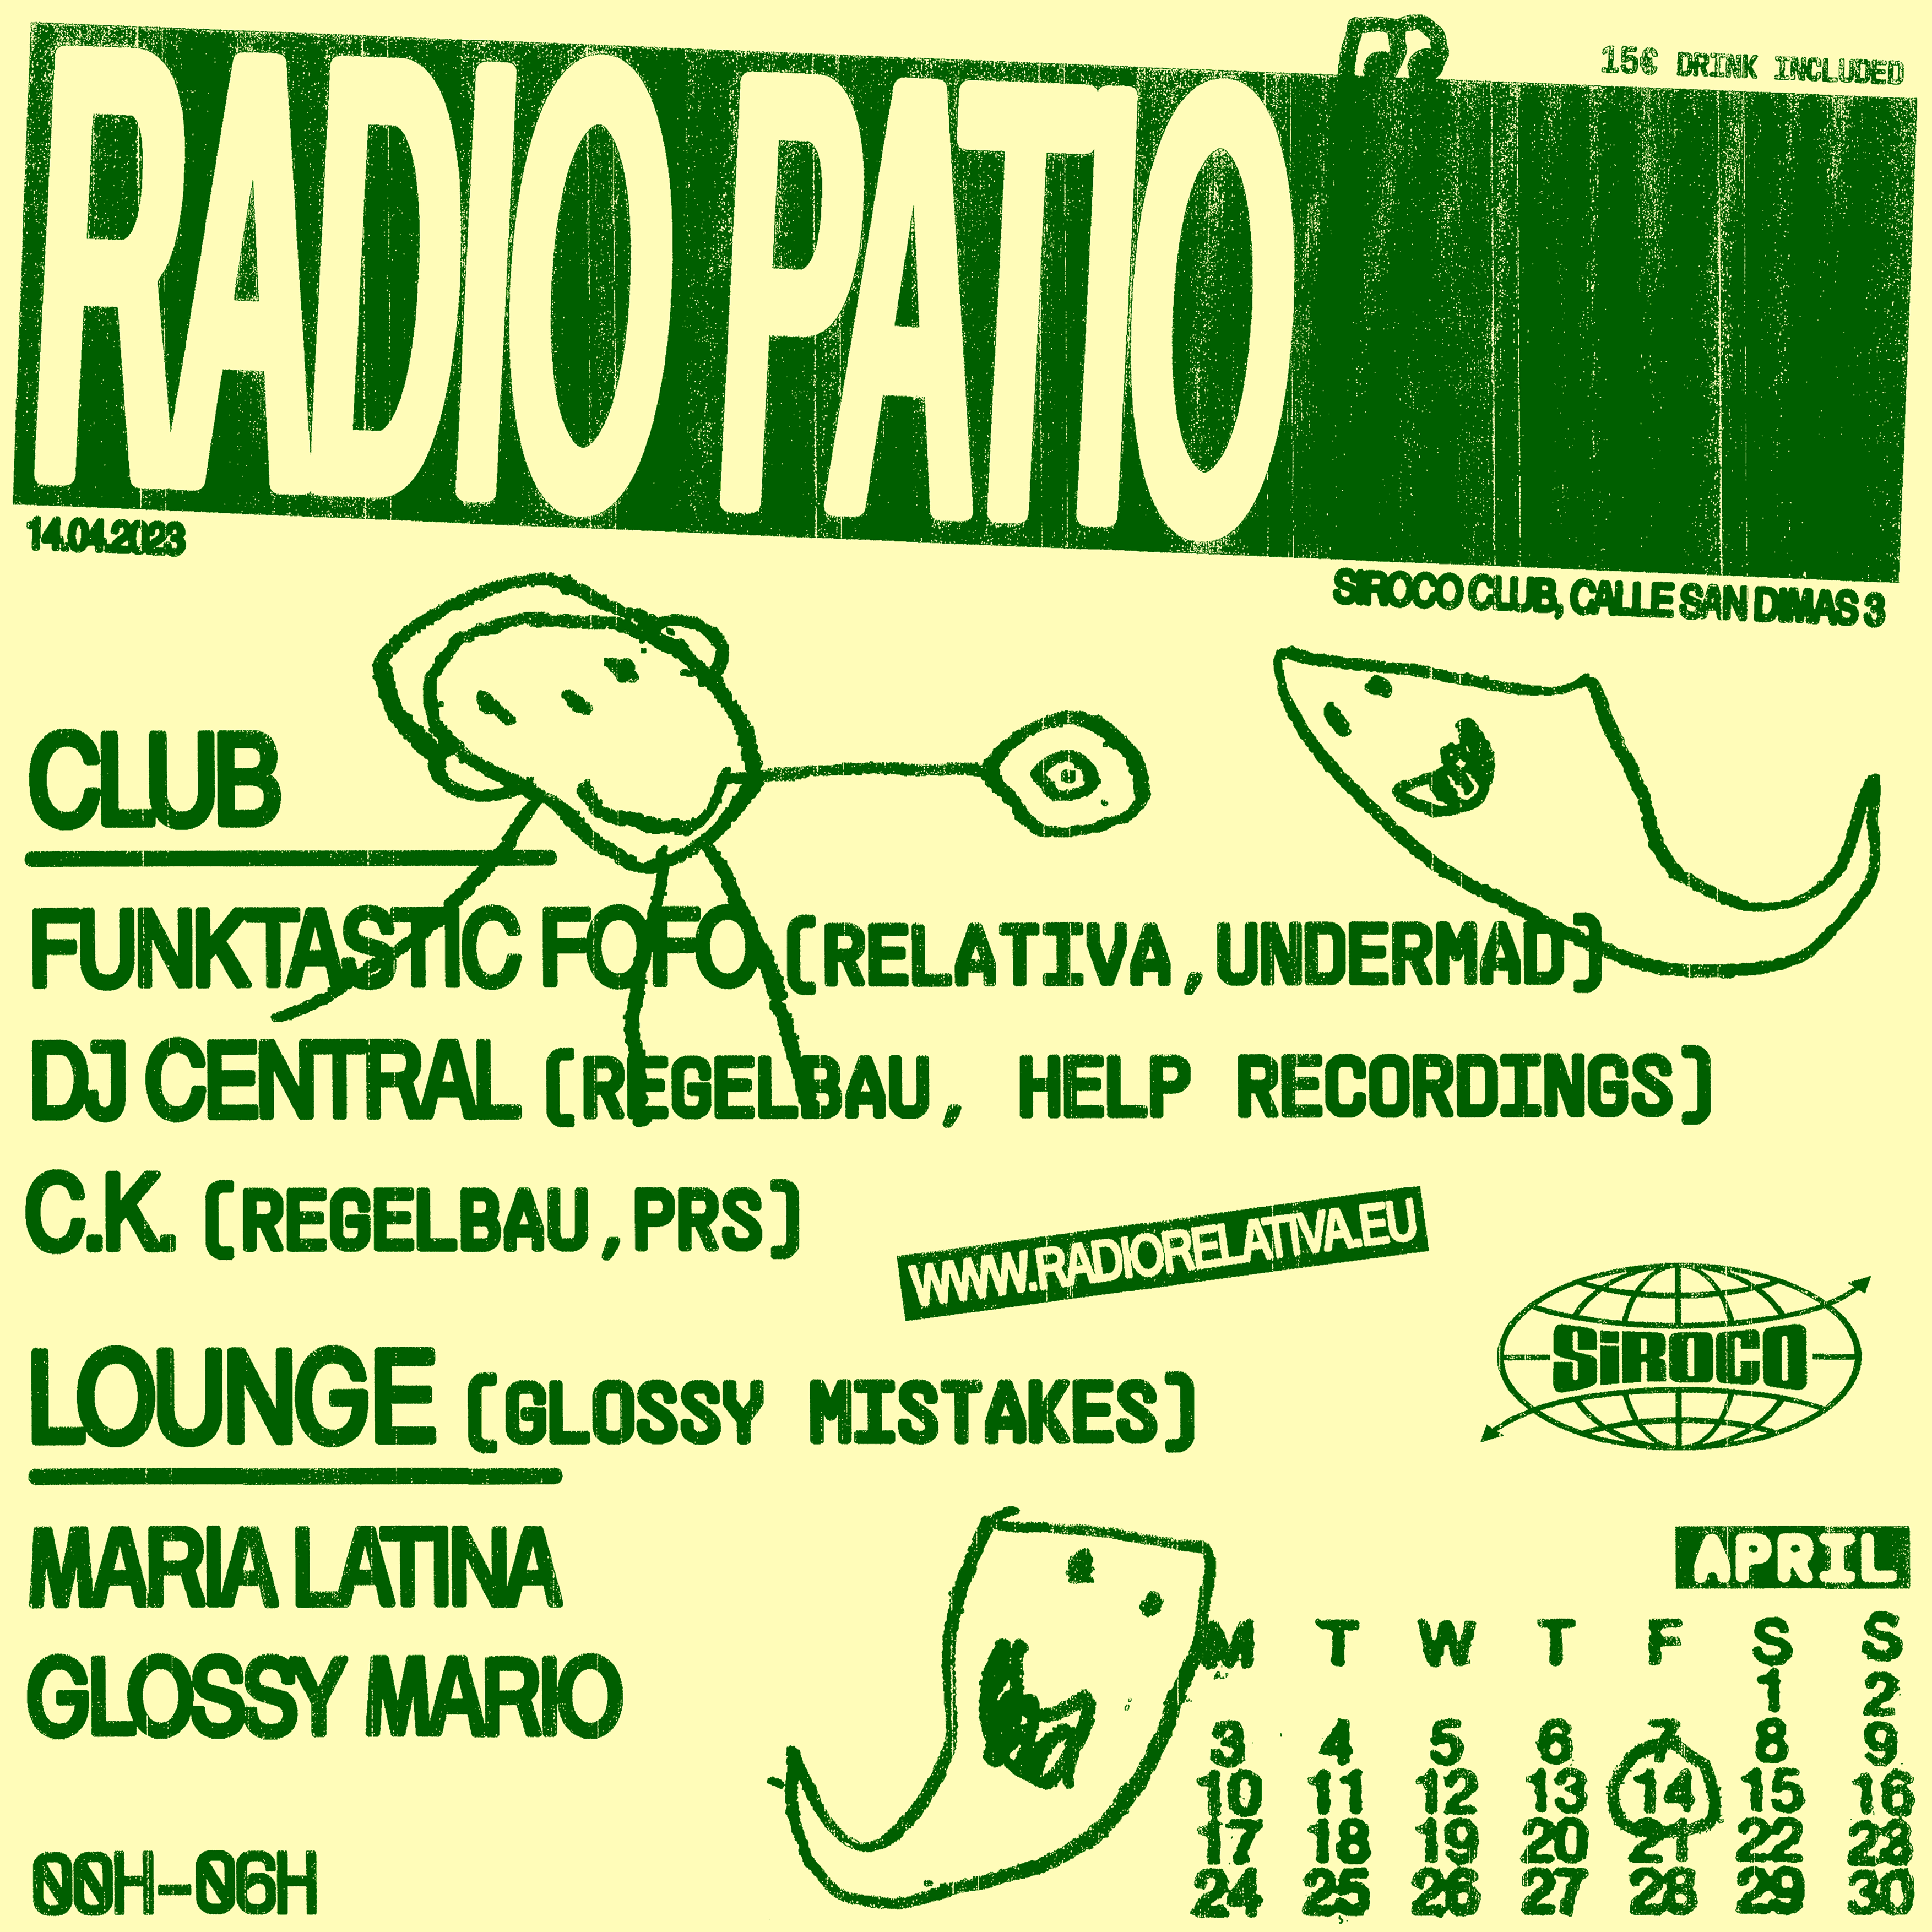 Radio Patio: Maria Latina & Glossy Mario (Glossy Mistakes)